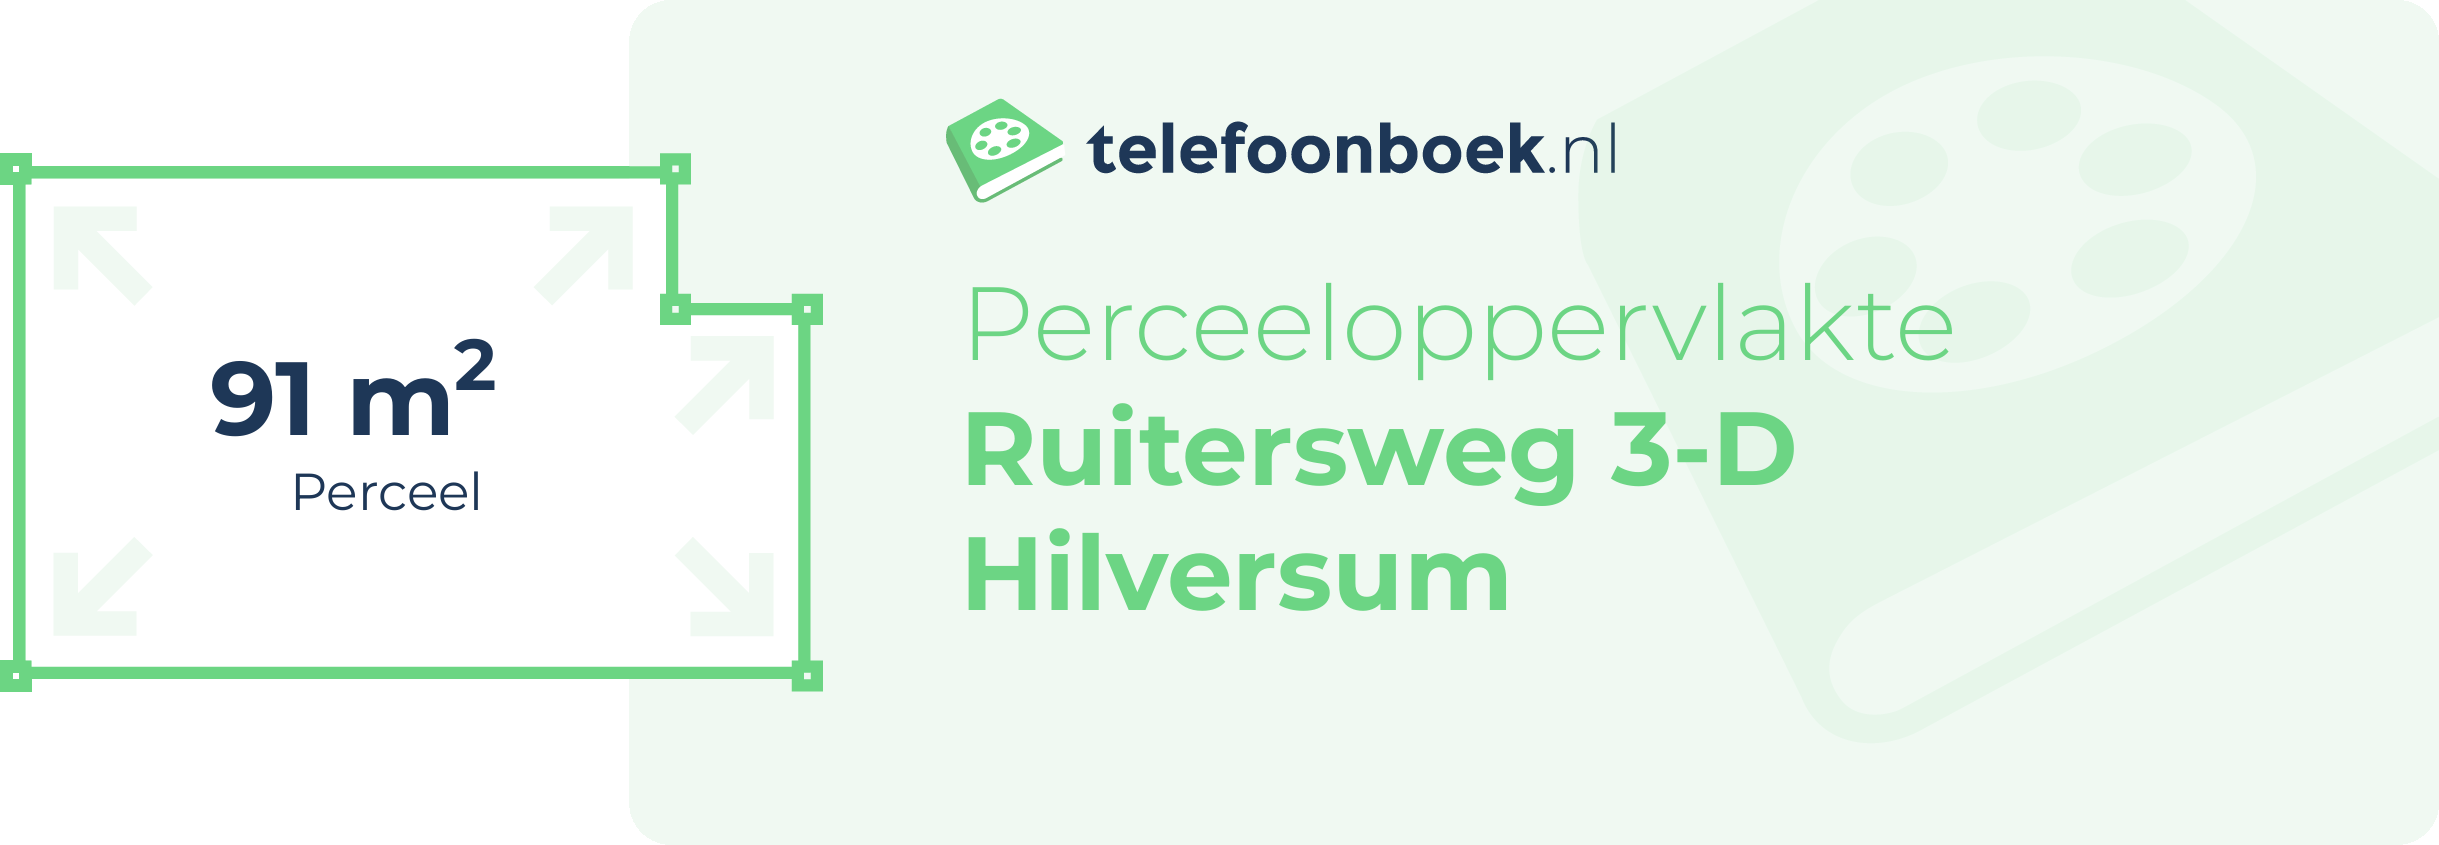 Perceeloppervlakte Ruitersweg 3-D Hilversum